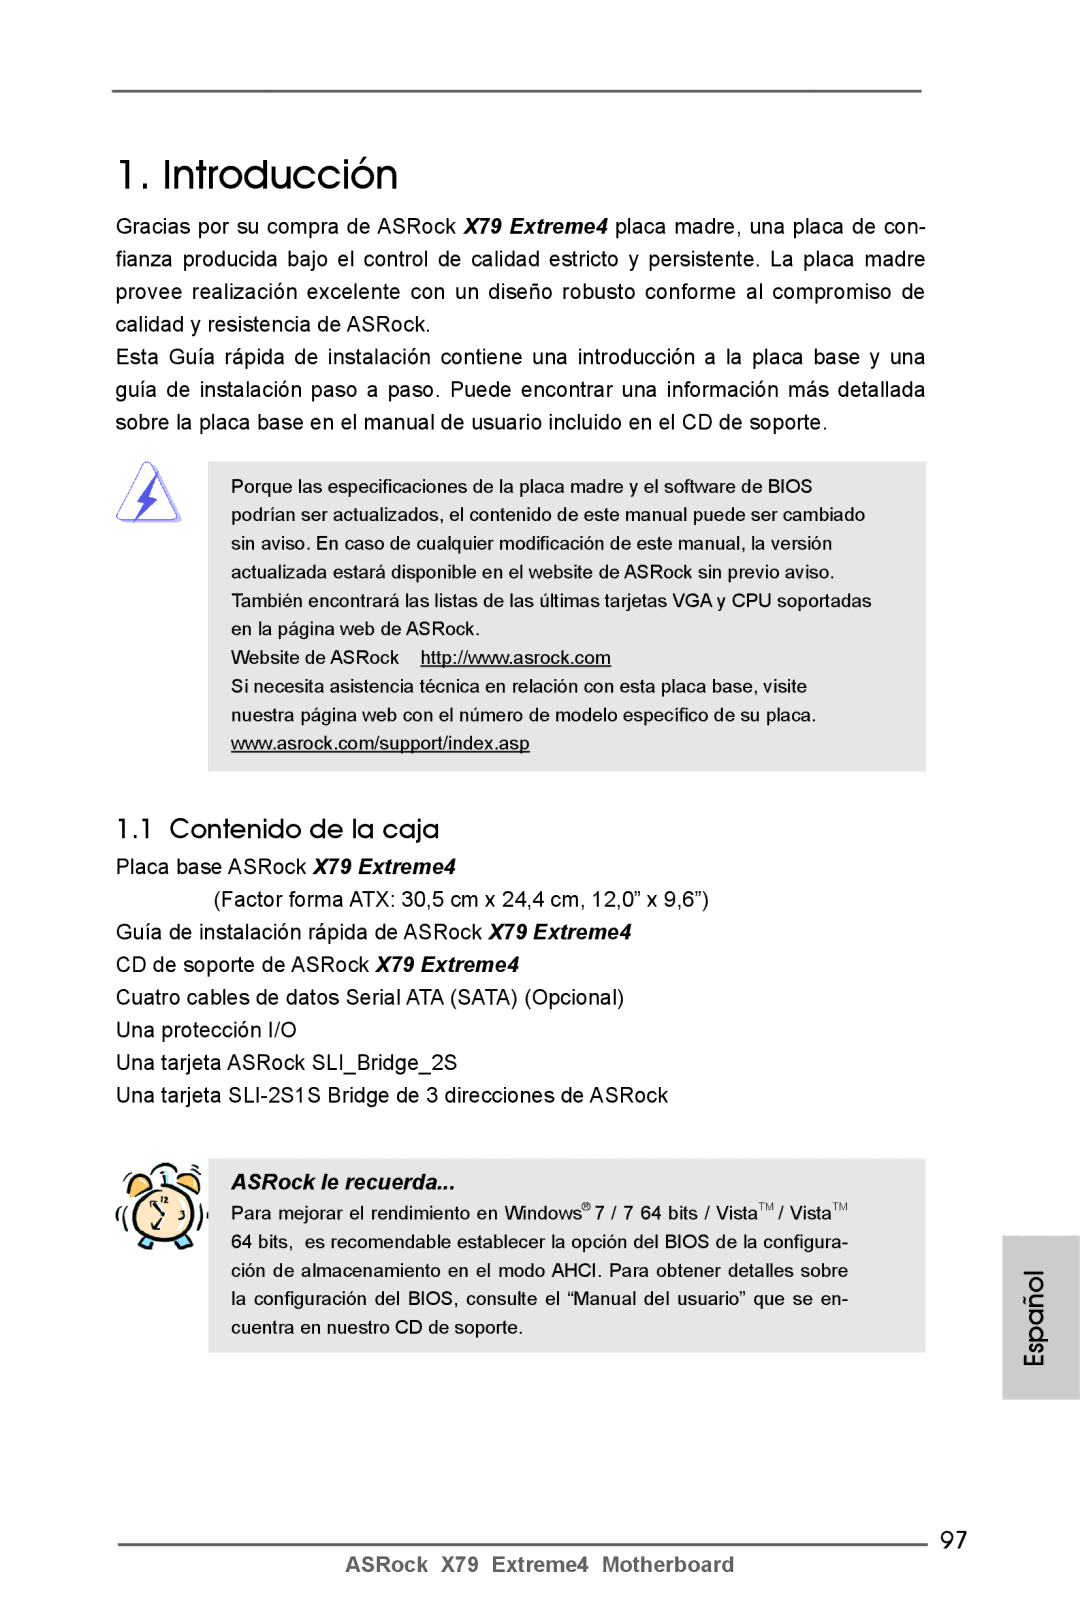 ASRock X79 Extreme4 manual Contenido de la caja, Español 